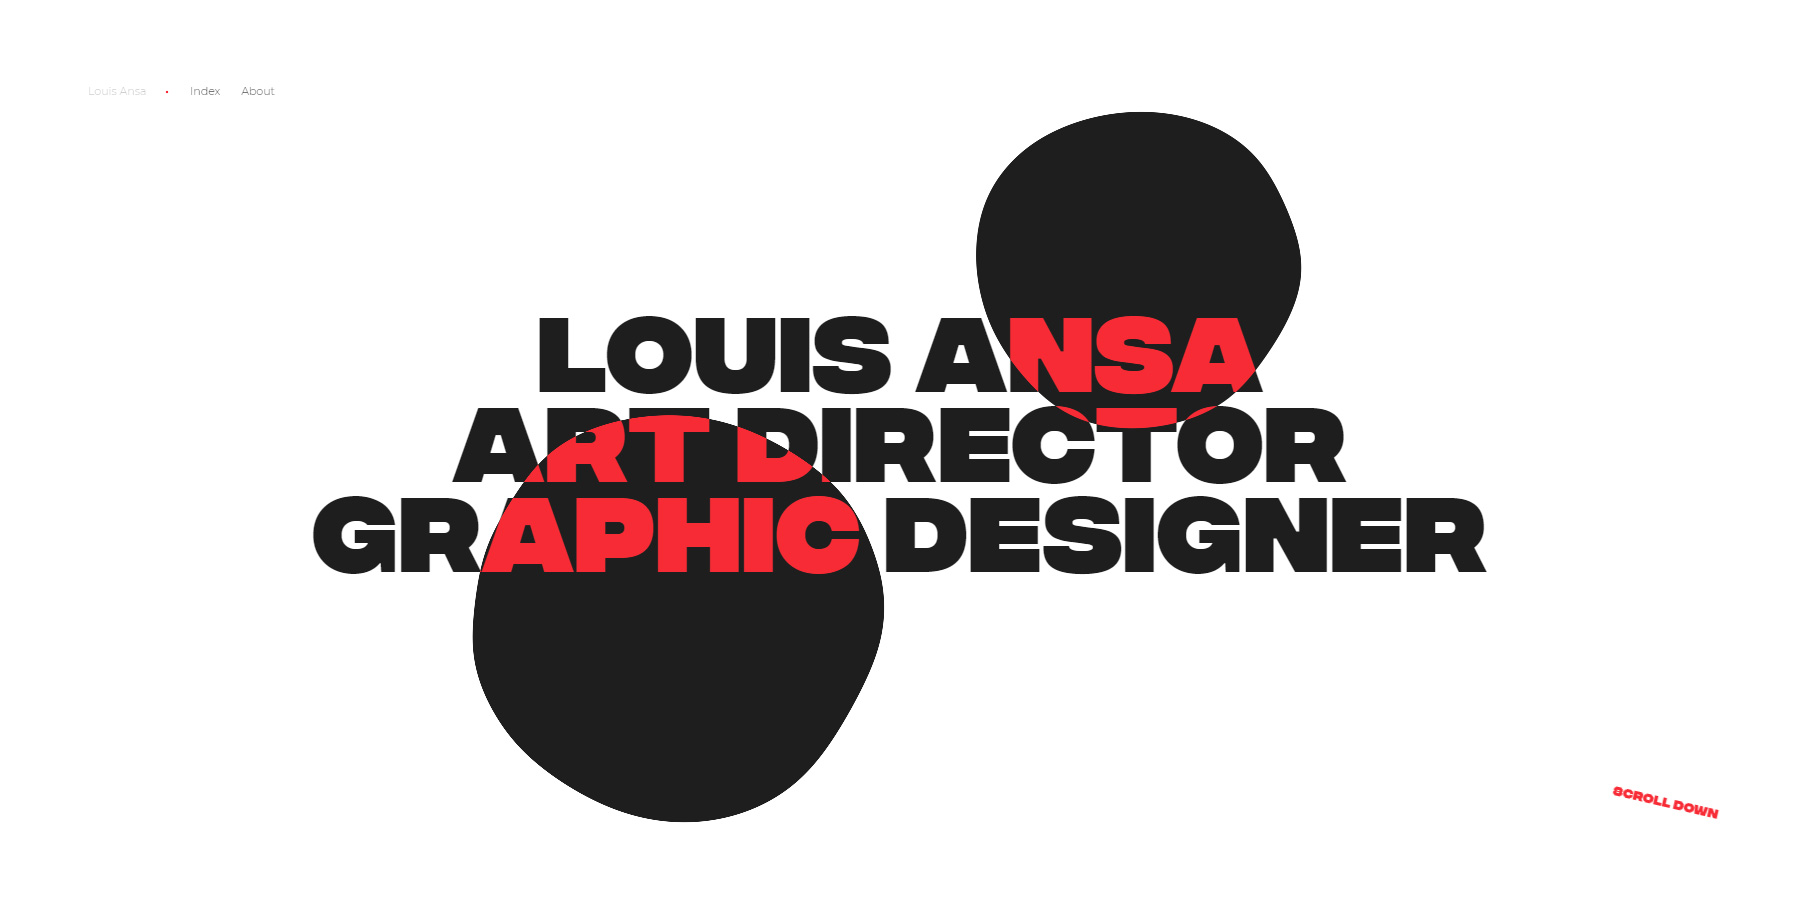 Louis Ansa Portfolio 2018 - Website of the Day